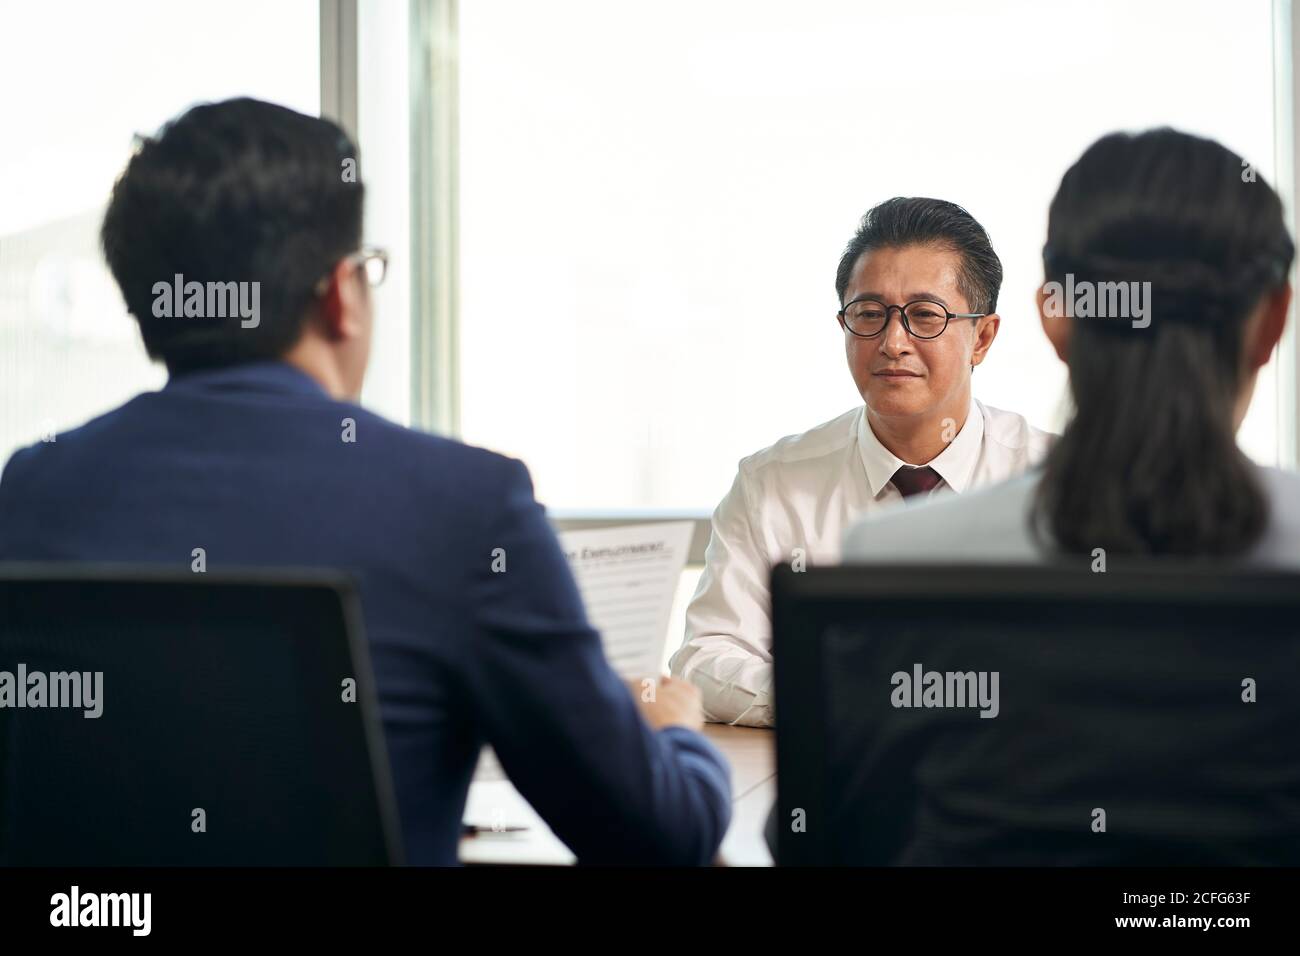 chercheur d'emploi mature homme d'affaires asiatique interviewé par jeune cadres des ressources humaines Banque D'Images